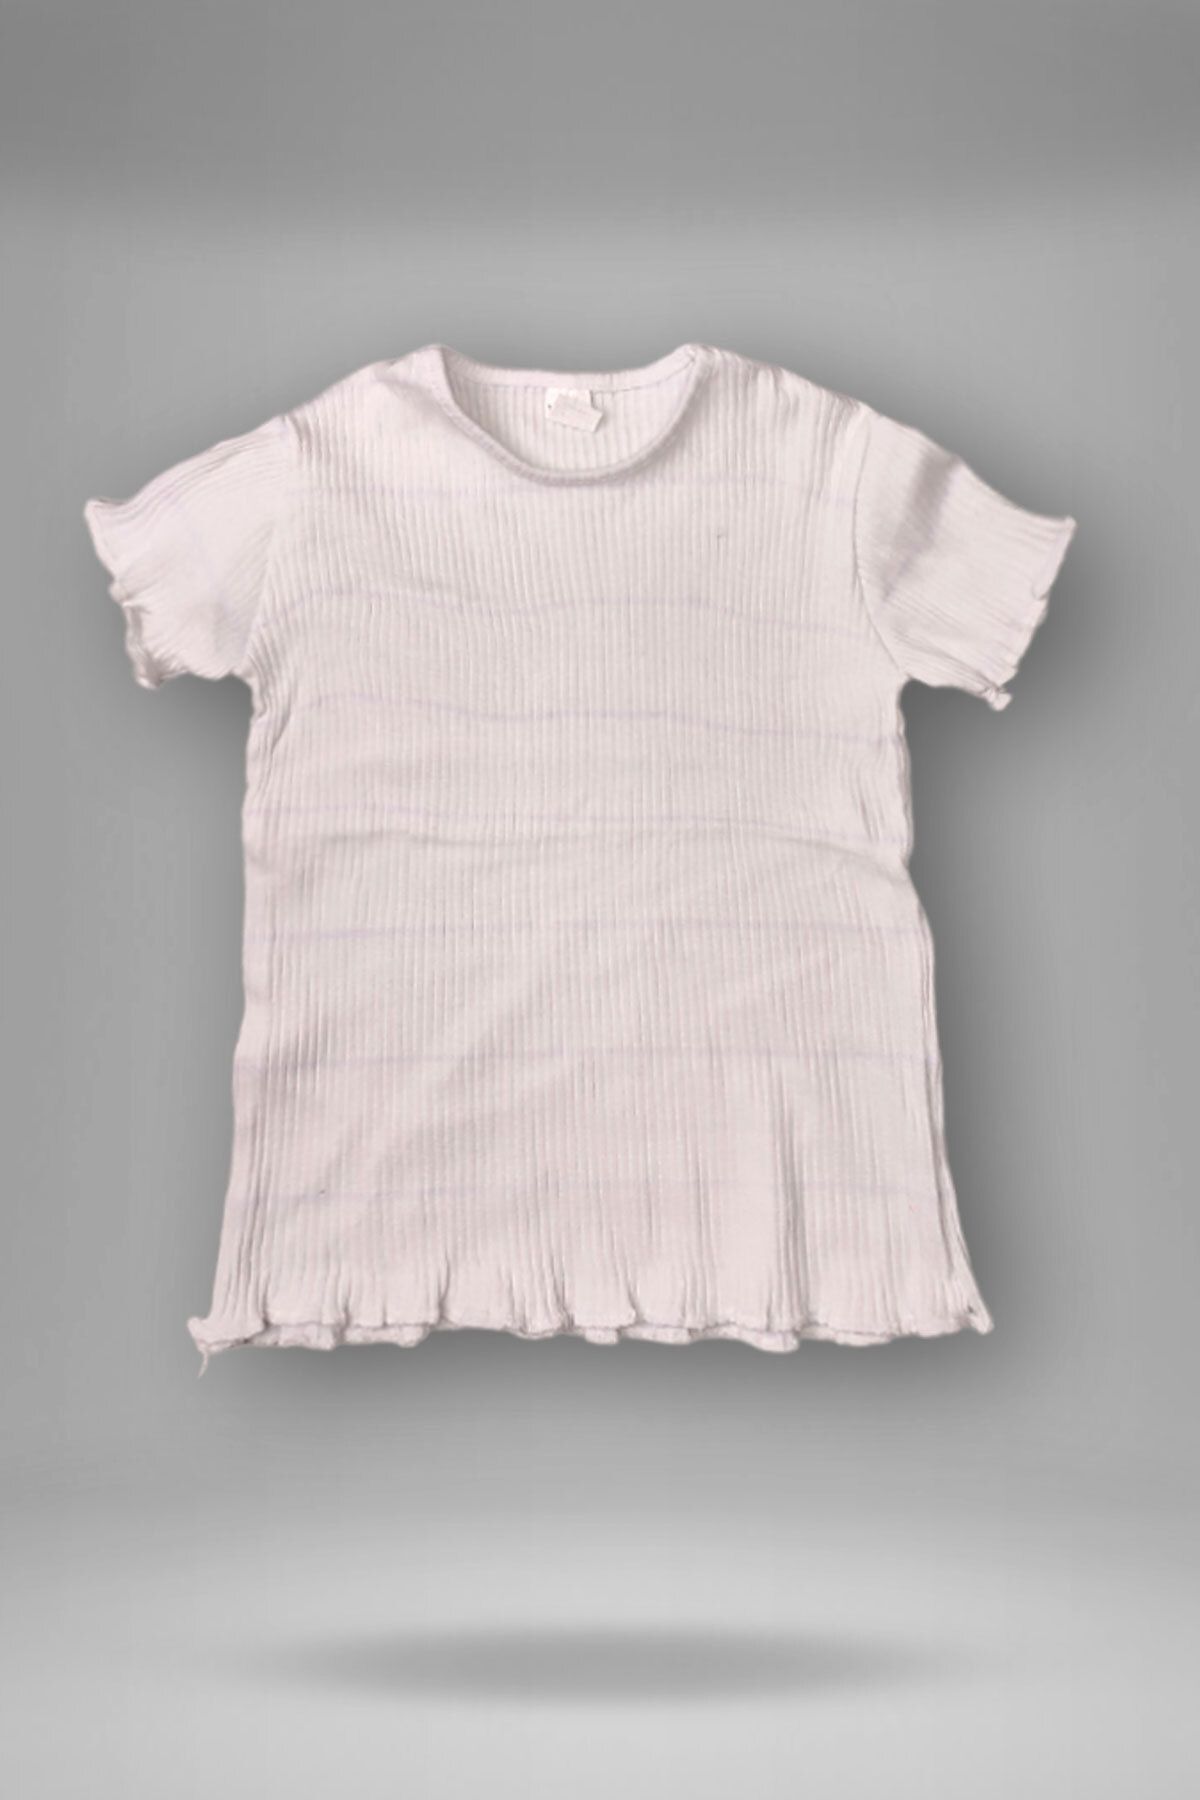 Peki 5 Al 4 Öde Yazlik Kiz Çocuk Likrali Esnek Yumuşak Düz Sürfile Fırfırlı Body Badi Bluz Tişört 15255